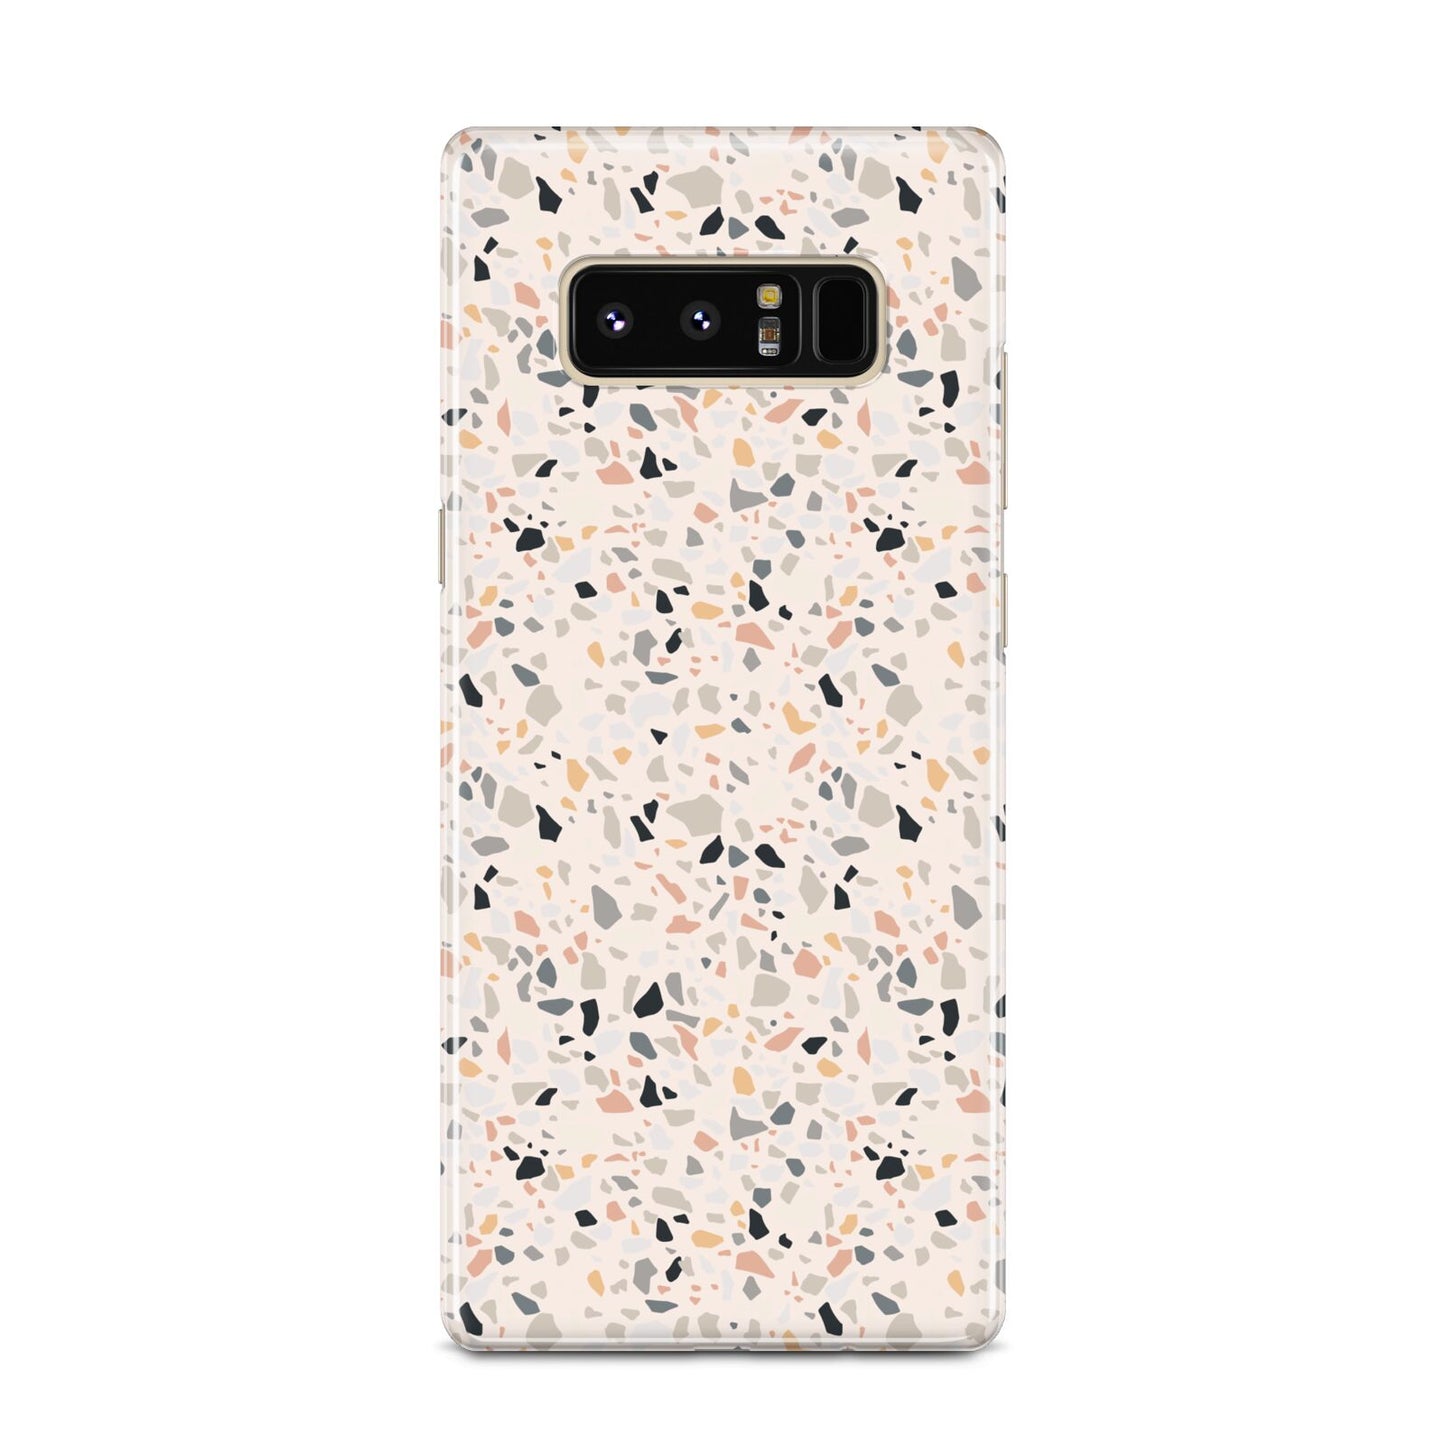 Terrazzo Stone Samsung Galaxy Note 8 Case